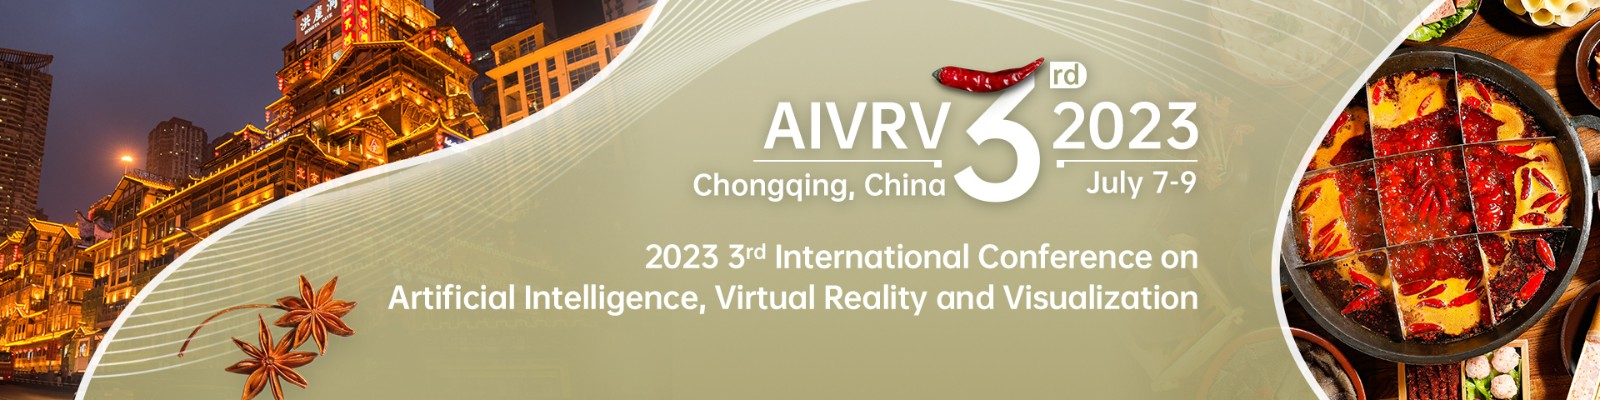 7月重庆-AIVRV-会议官网英文.jpg